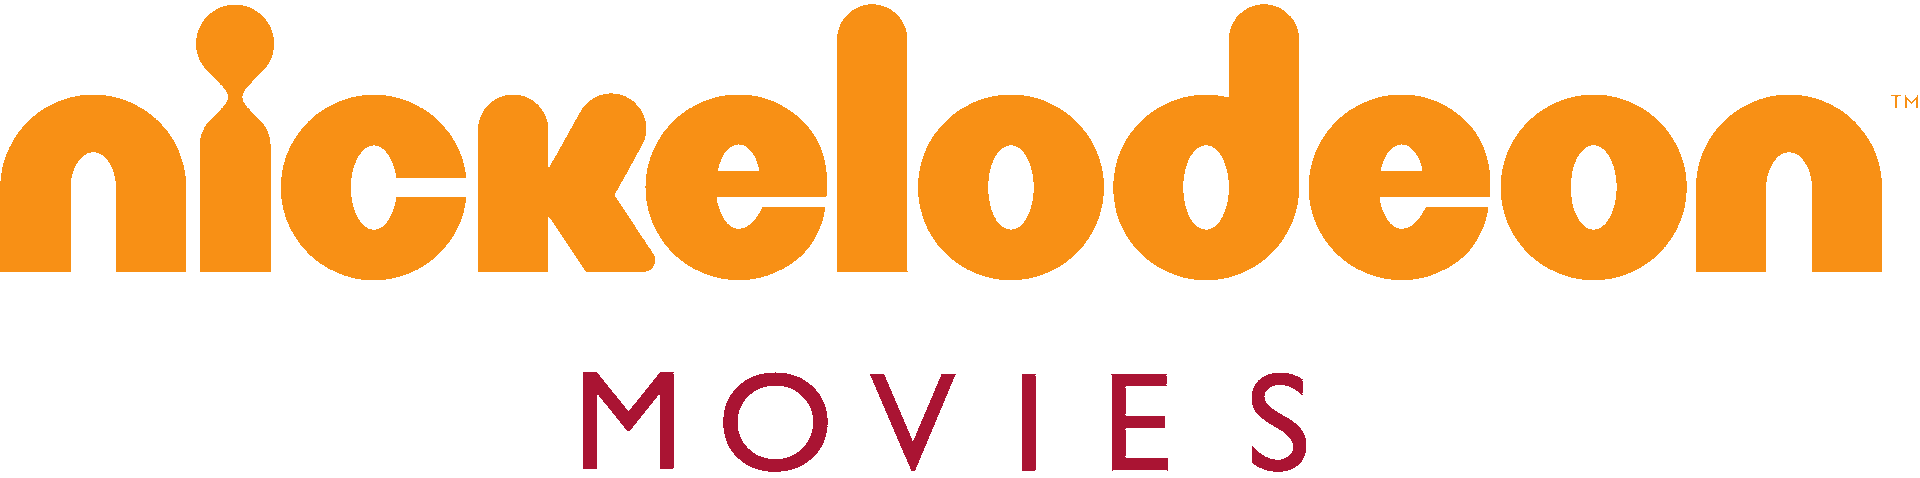 New Nickelodeon Logo - Image - Nickelodeon Movies Logo.png | New Adam's CLG Wiki: Dream ...